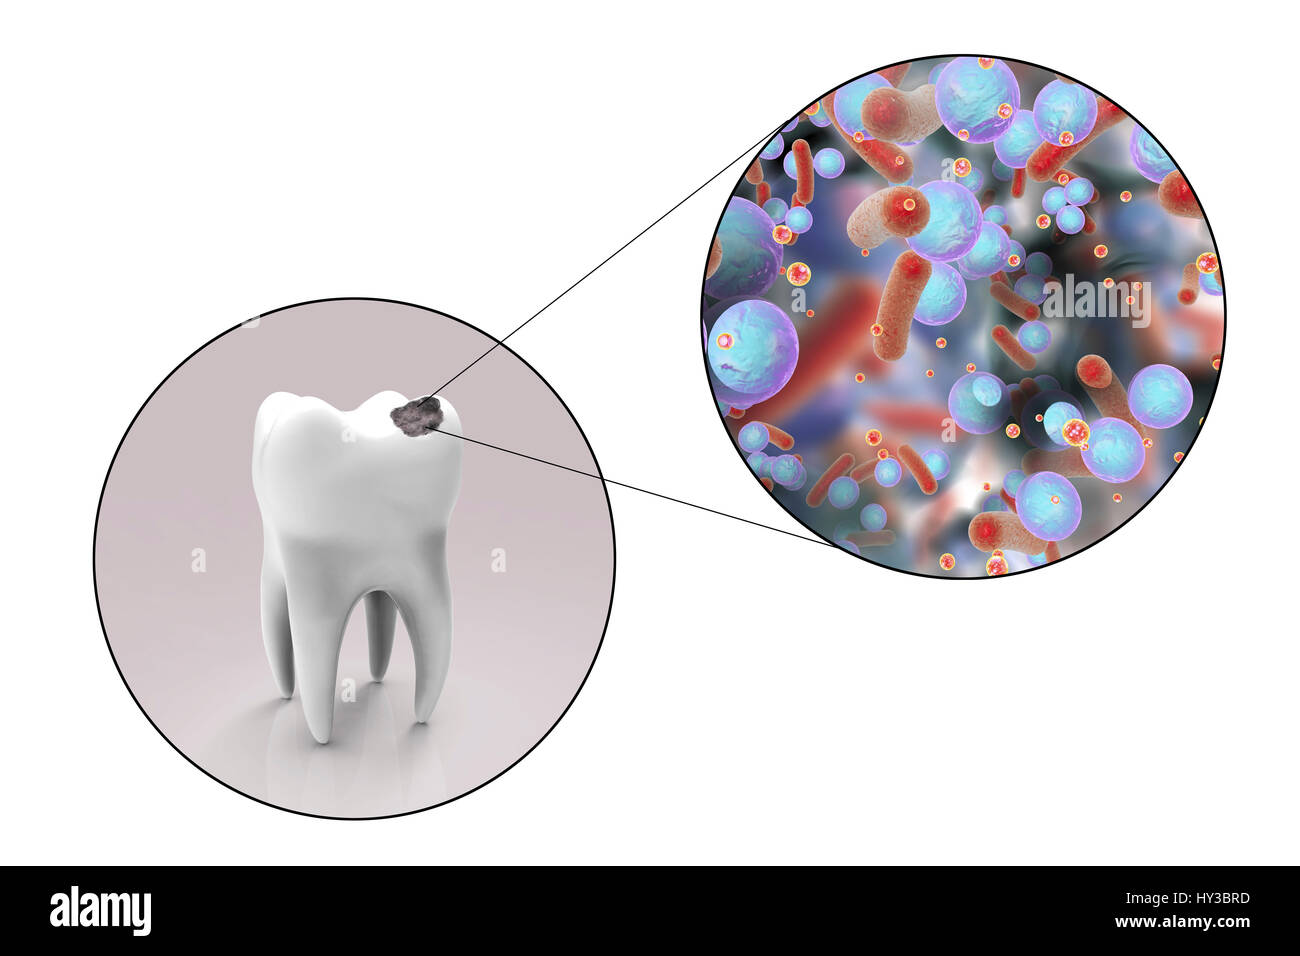 La carie dentaire. Illustration d'ordinateur d'une dent avec une cavité et une vue rapprochée de la bactérie à l'origine de la formation de caries. Banque D'Images